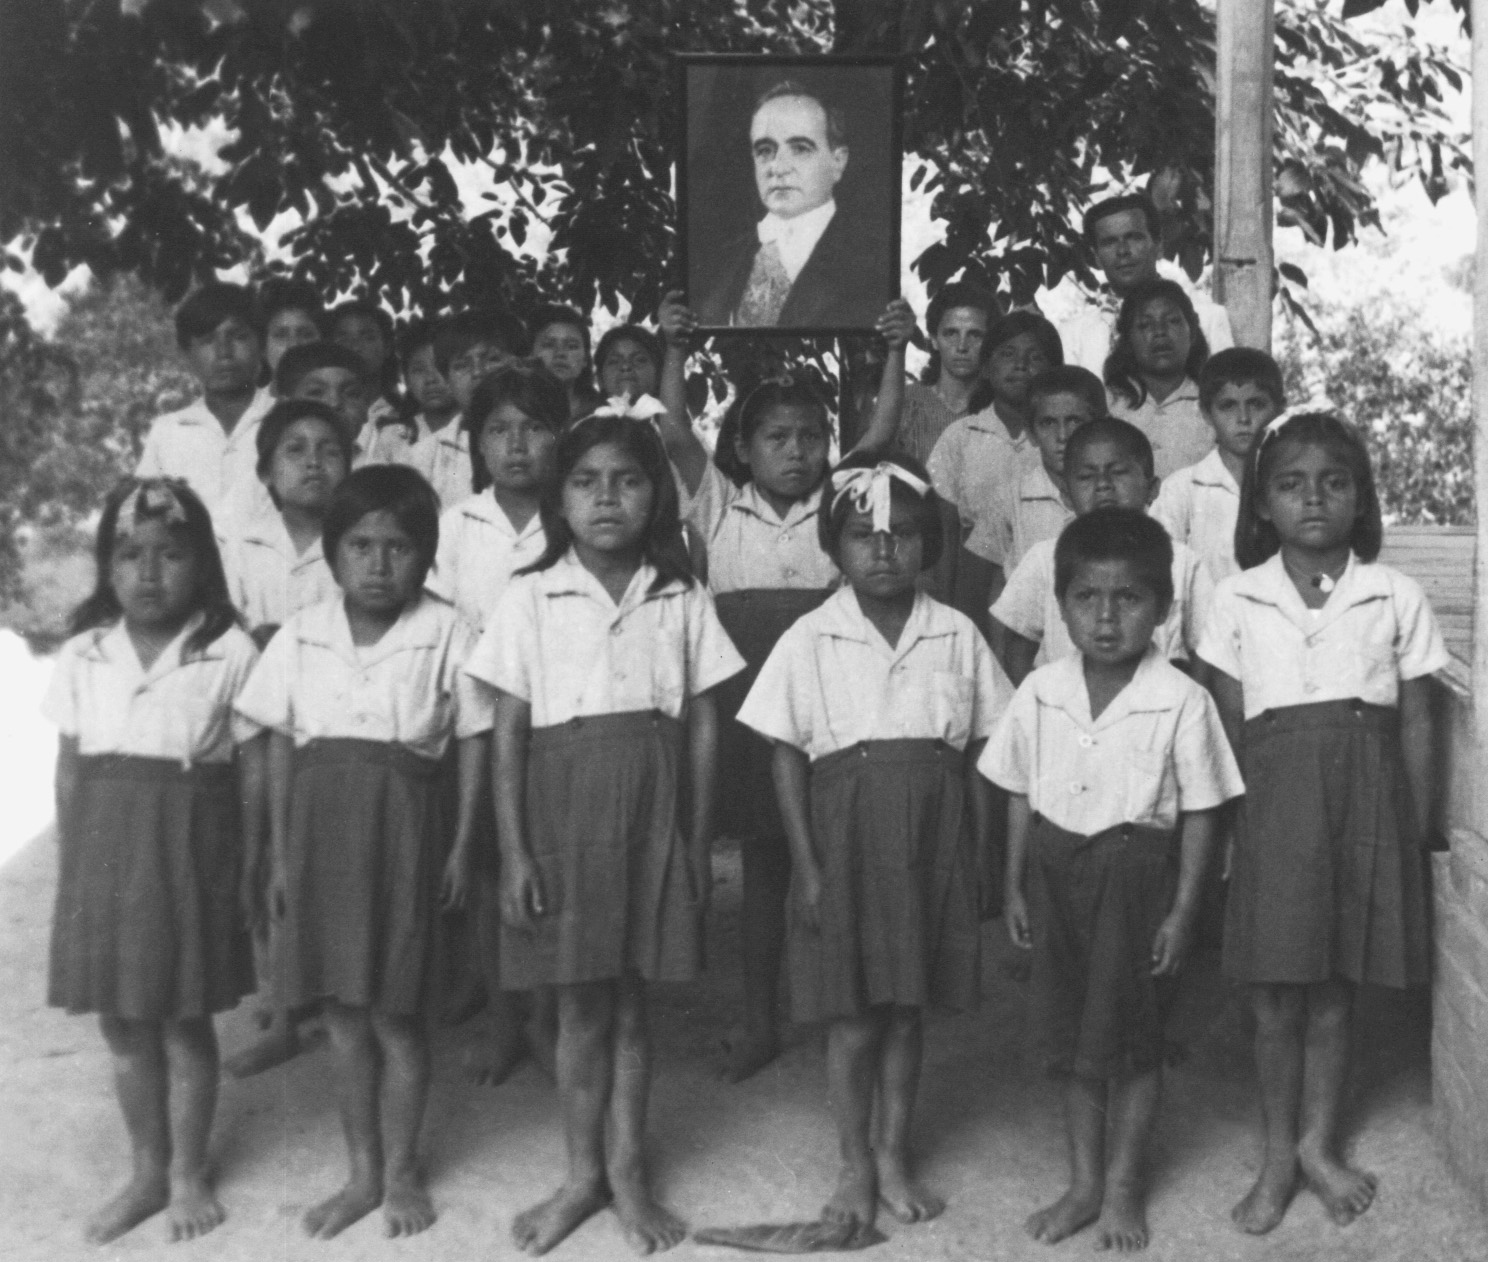 Fotografia em preto e branco. Crianças indígenas posando para foto. Estão de uniforme. Camisa clara e saia ou bermuda escura e larga. A criança no centro do grupo ergue um retrato de Getúlio Vargas.